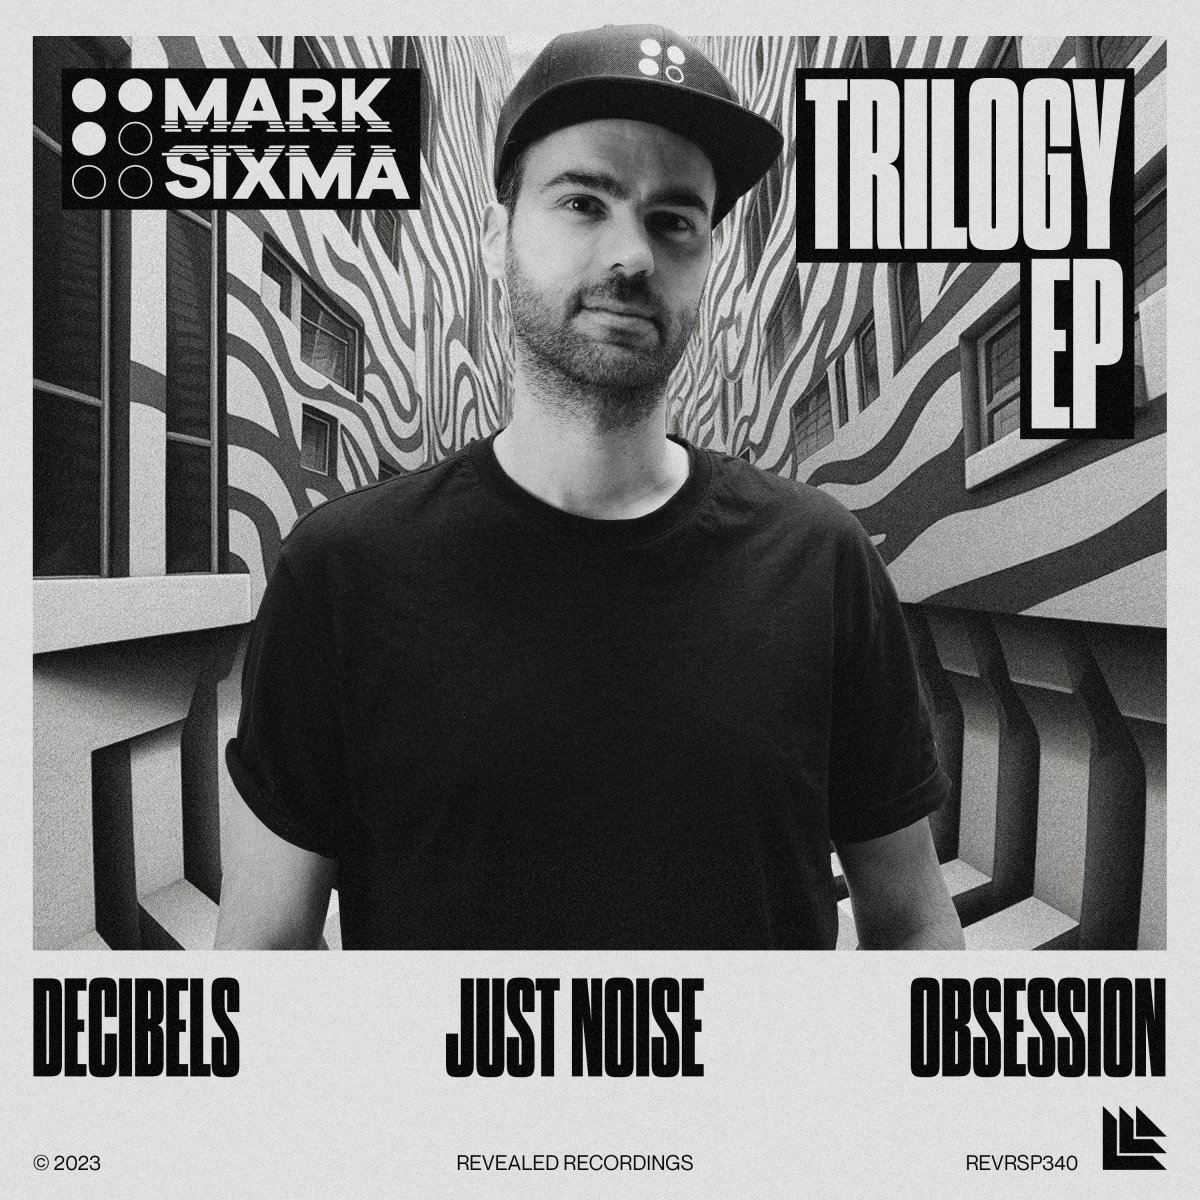 Trilogy EP - Mark Sixma⁠ 